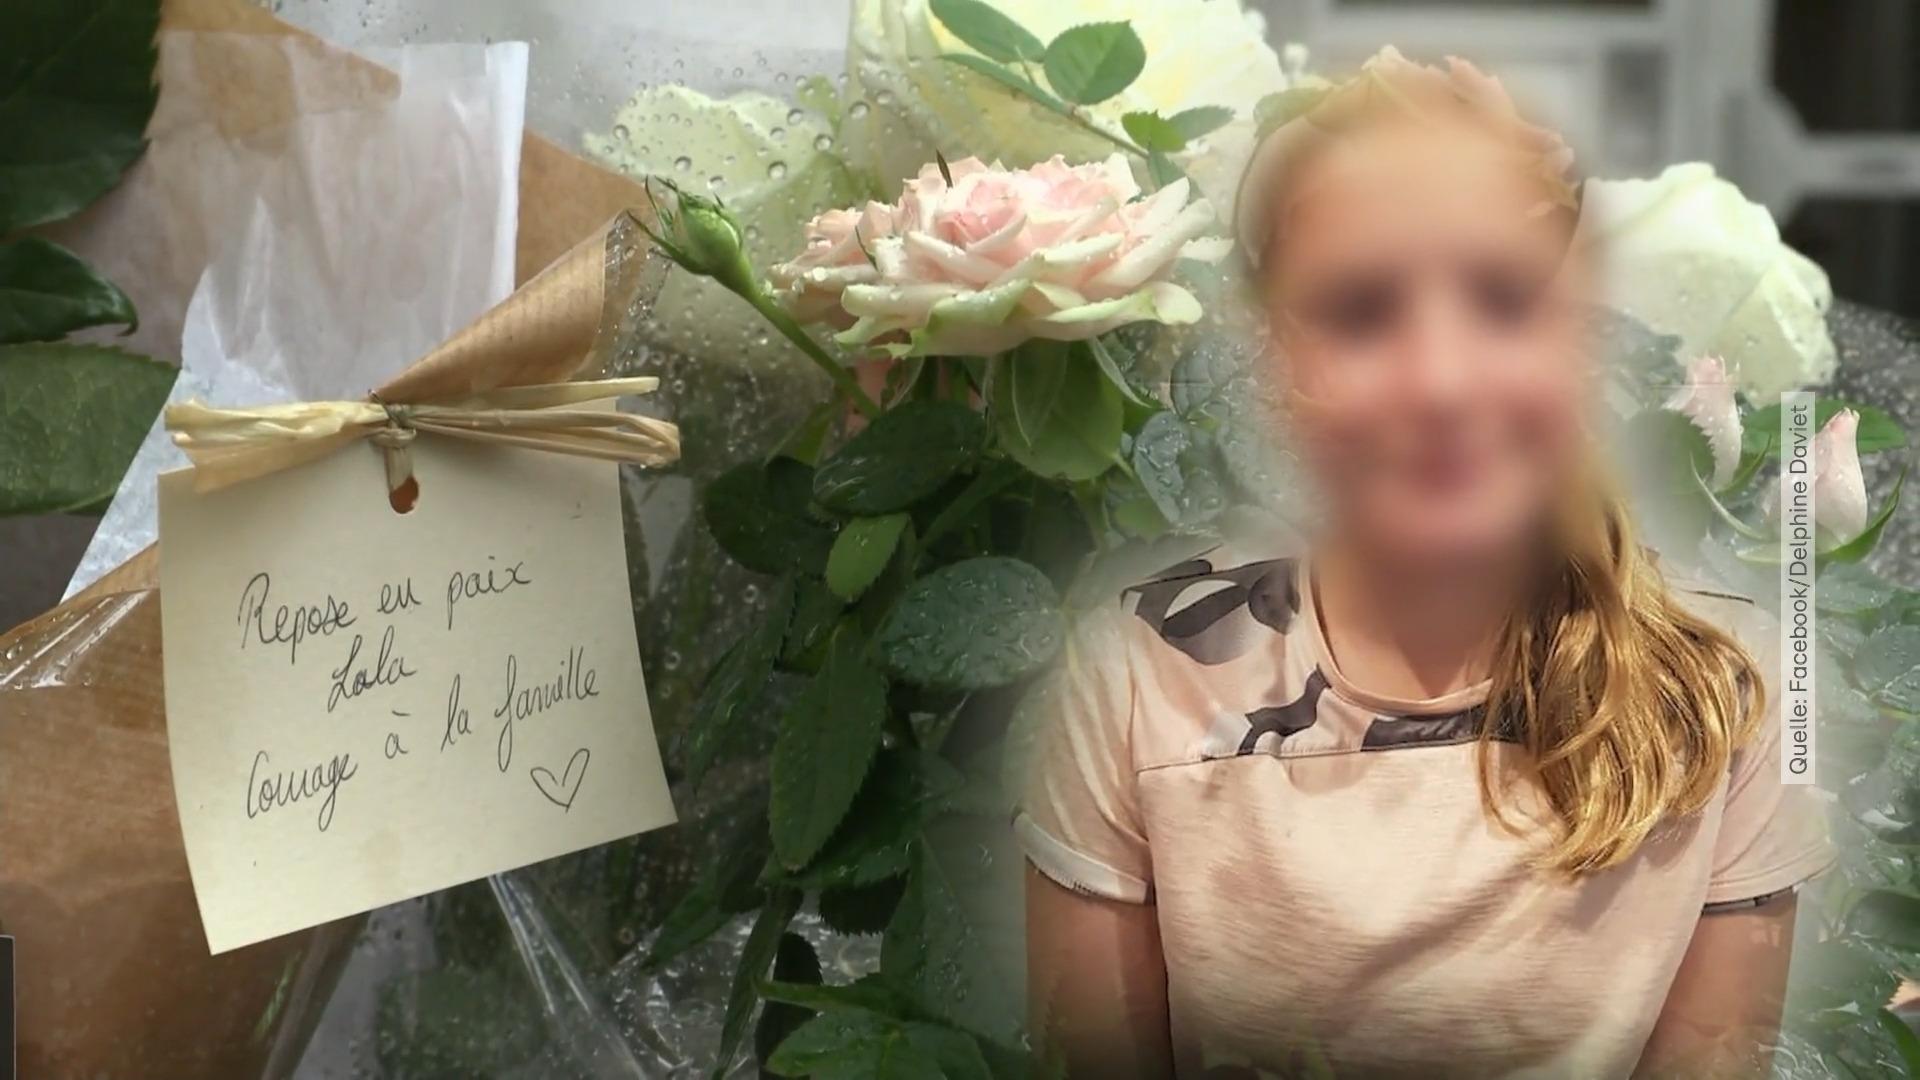 El cuerpo de la niña fue encontrado en una bolsa de asesinato en París